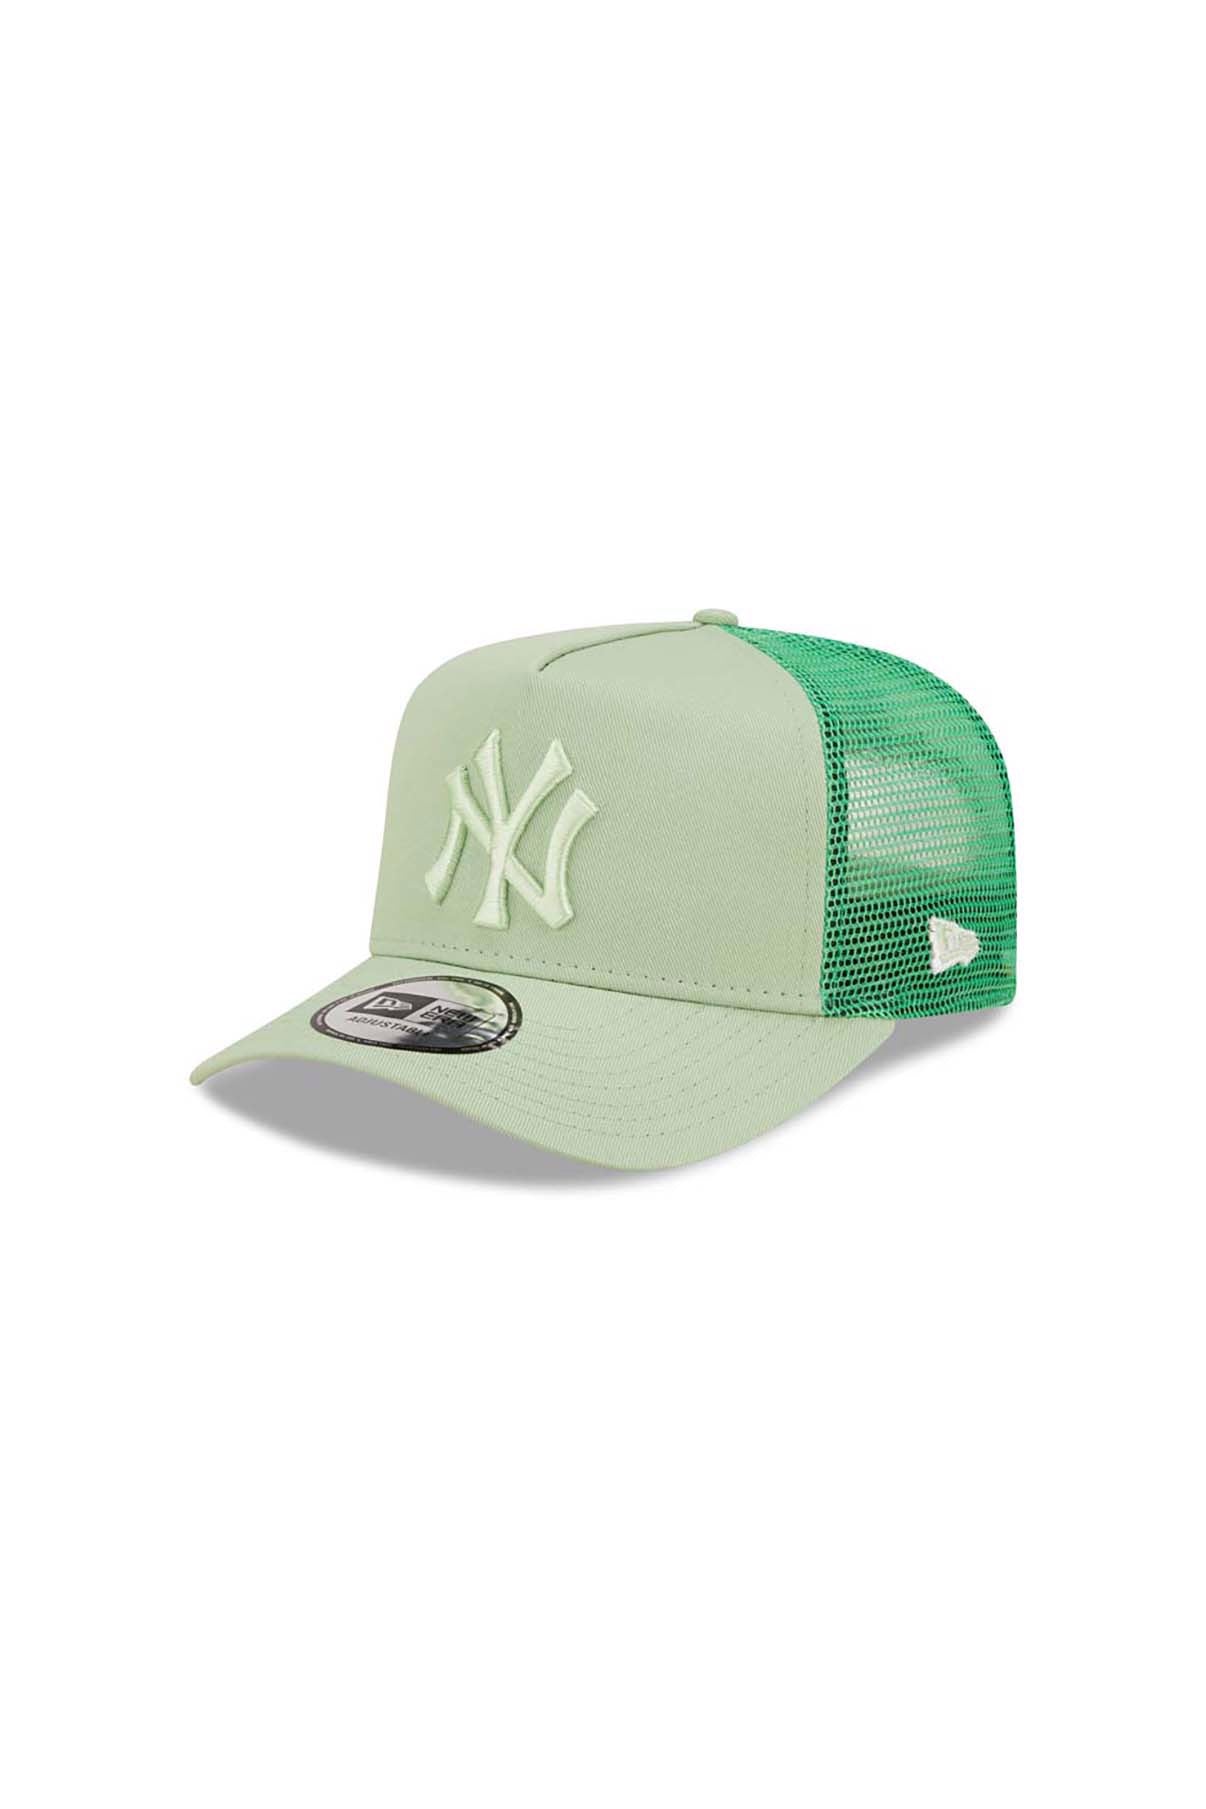 New Era Caps Mesh Trucker New York Yankees